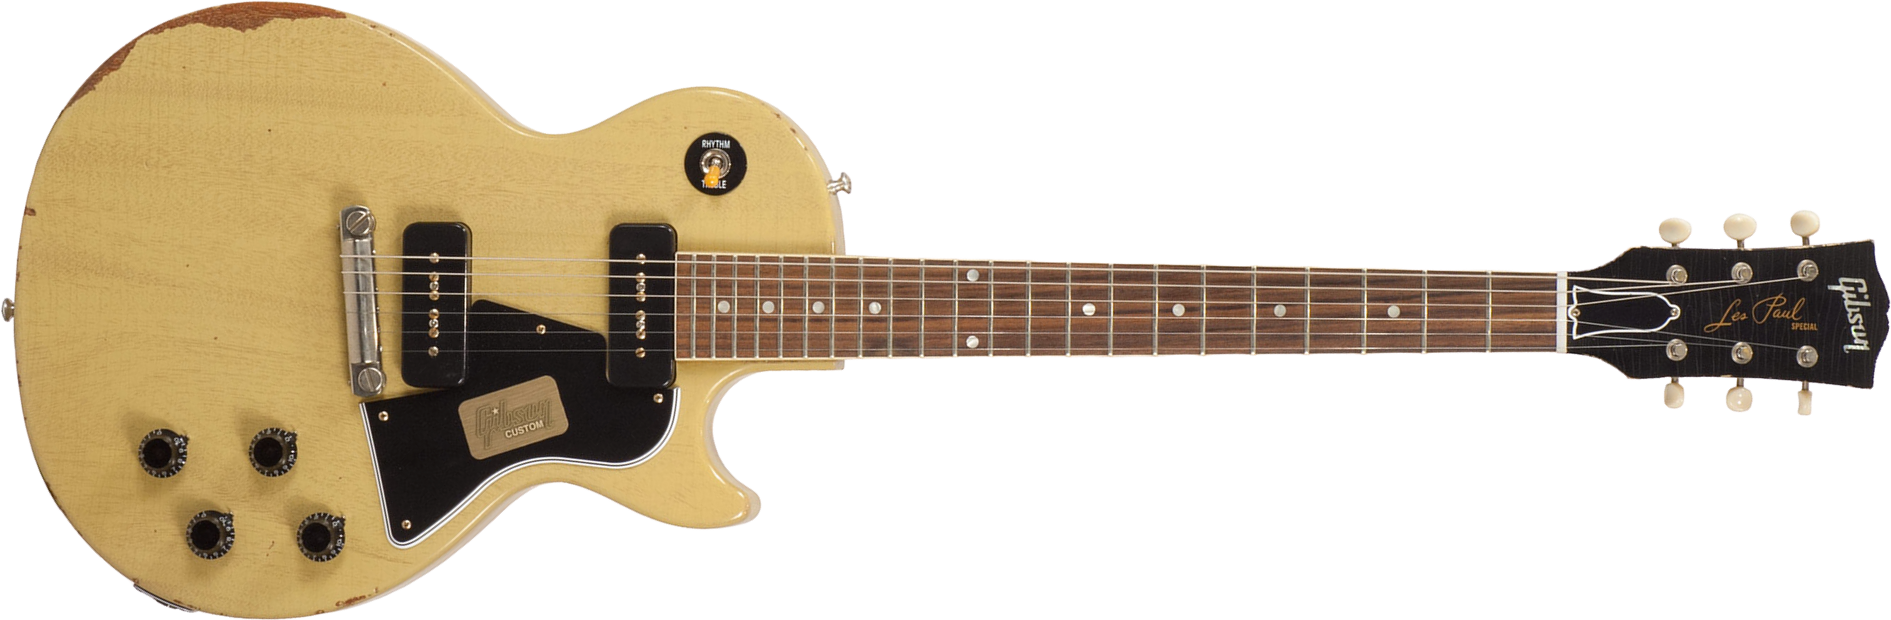 Gibson Custom Shop M2m  Les Paul Special 1960 Single Cut 2p90 Ht Rw - Heavy Aged Tv Yellow - Guitarra eléctrica de corte único. - Main picture